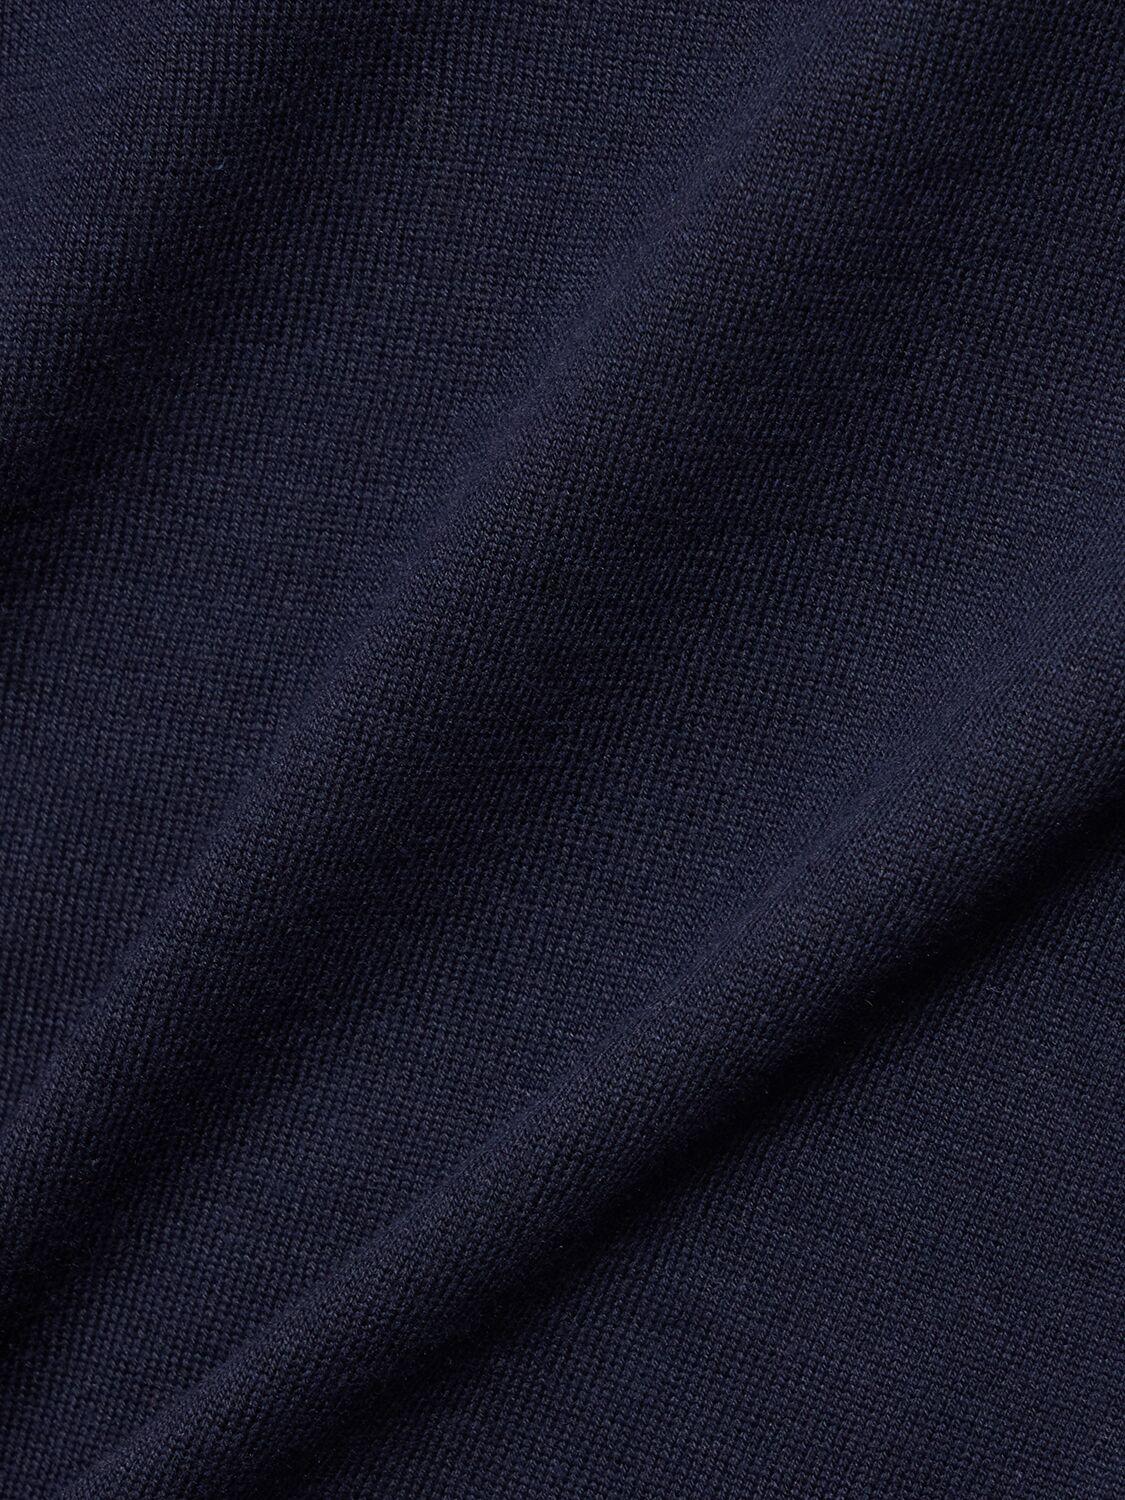 Shop Brunello Cucinelli Cotton Crewneck Sweater In Navy